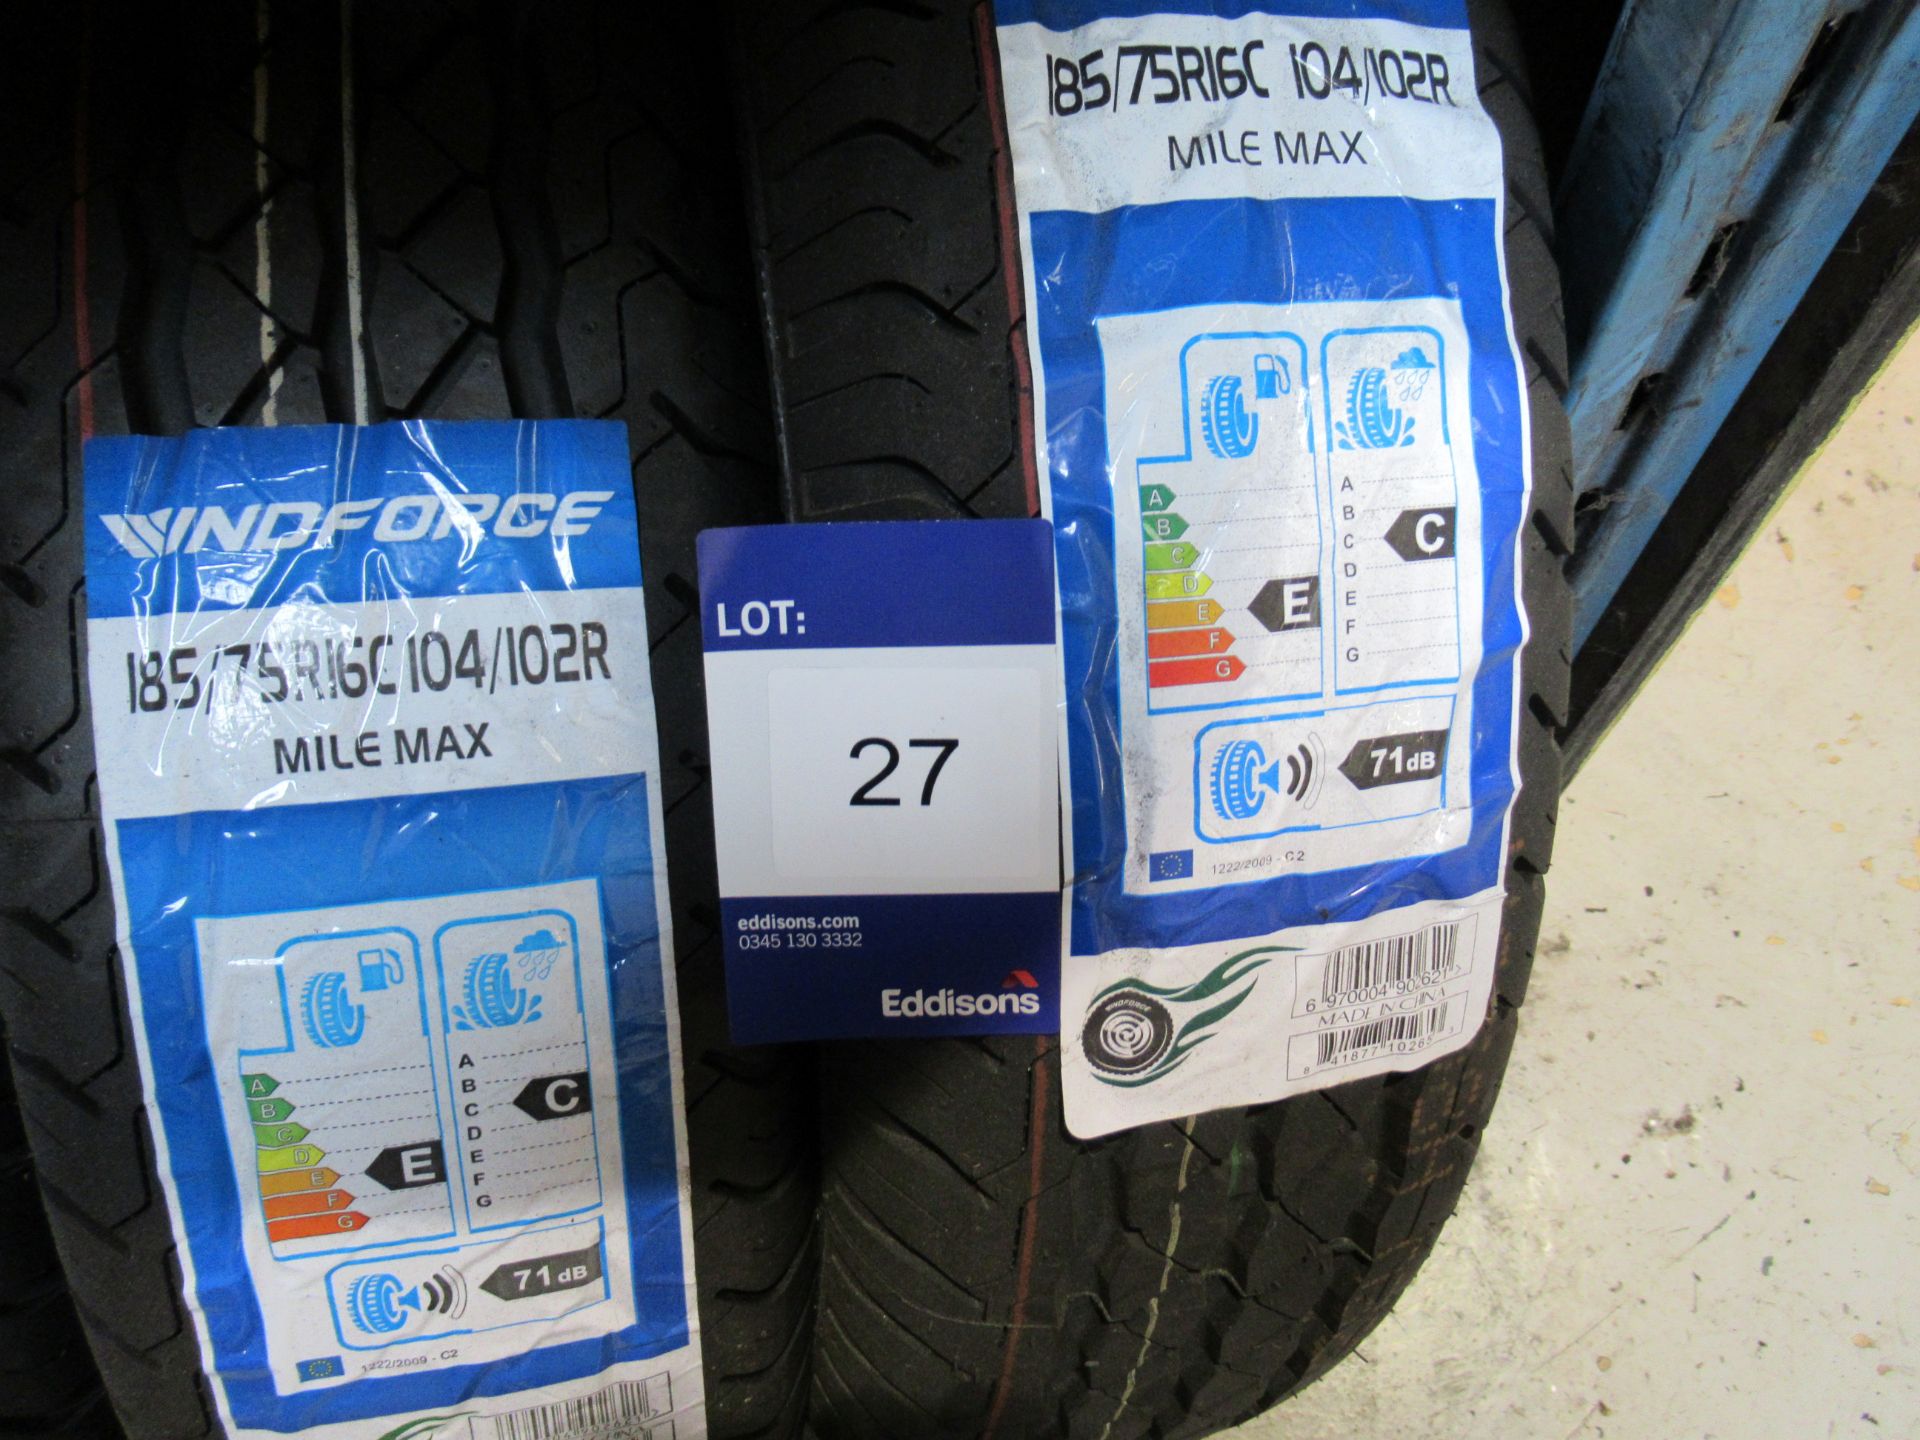 3 x Windforce 185/75x16 8 PR Tyres